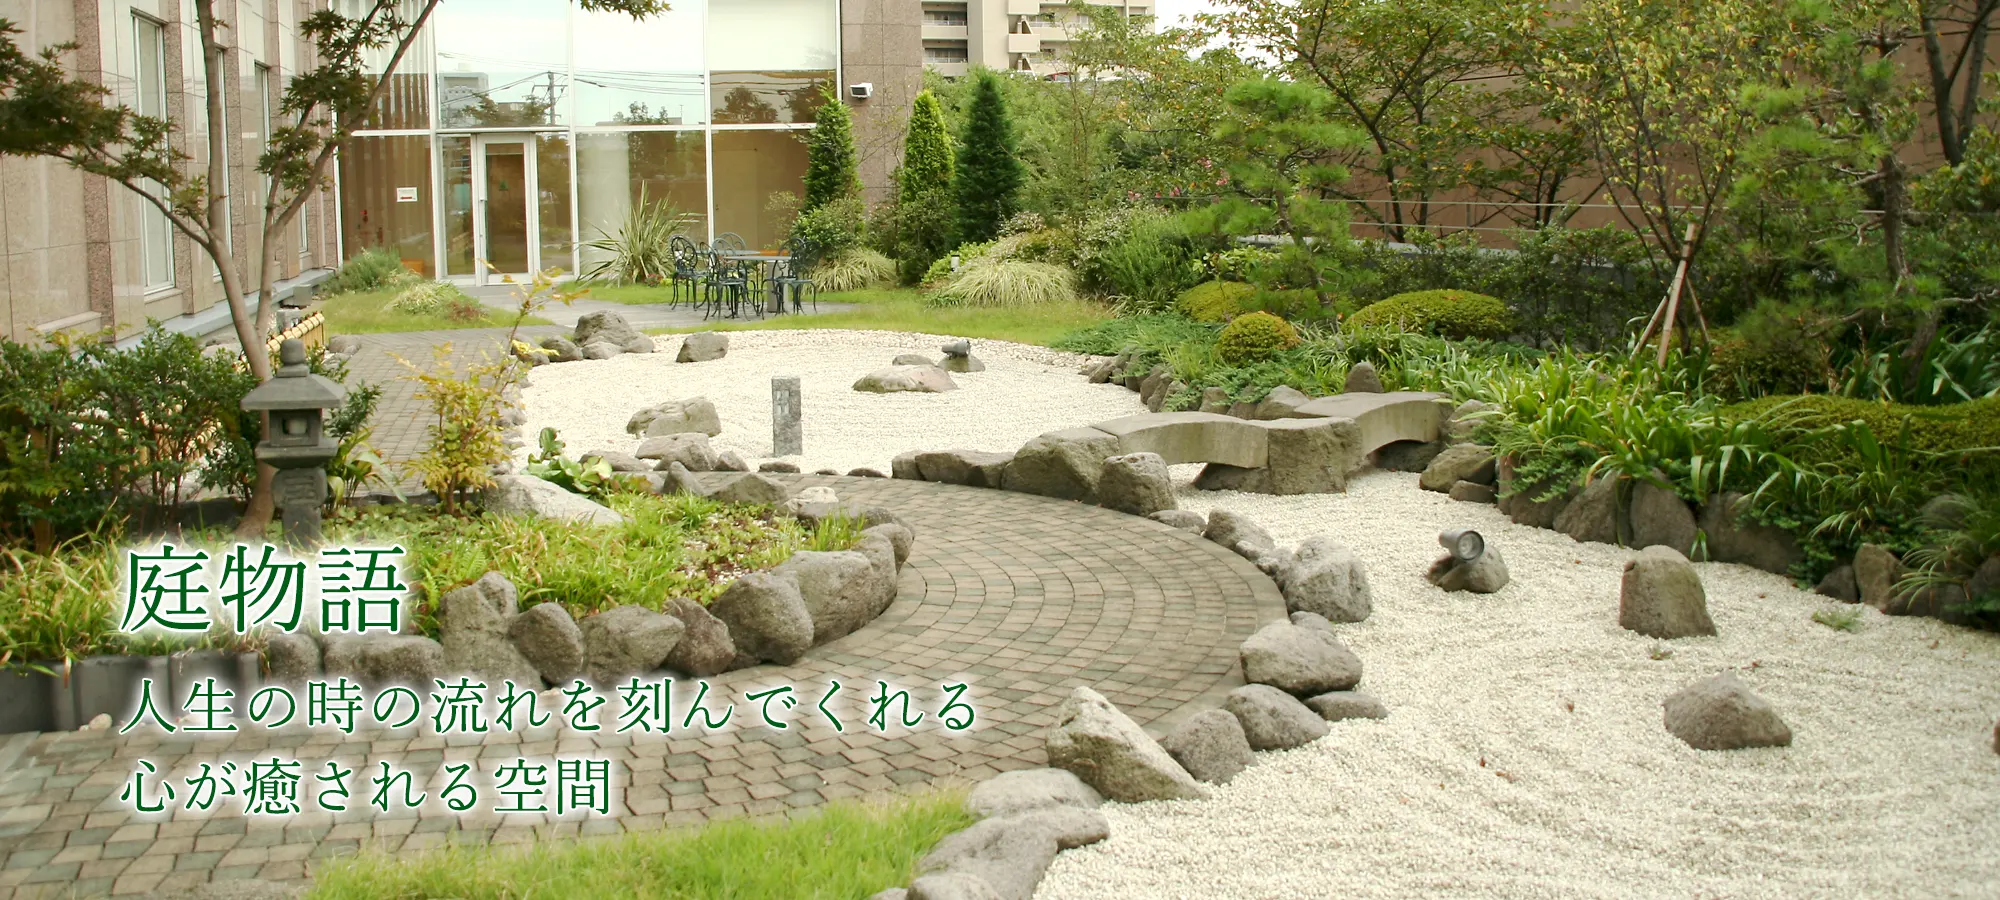 庭づくり 屋上庭園 外構｜造園業 さいたま造園 埼玉県さいたま市